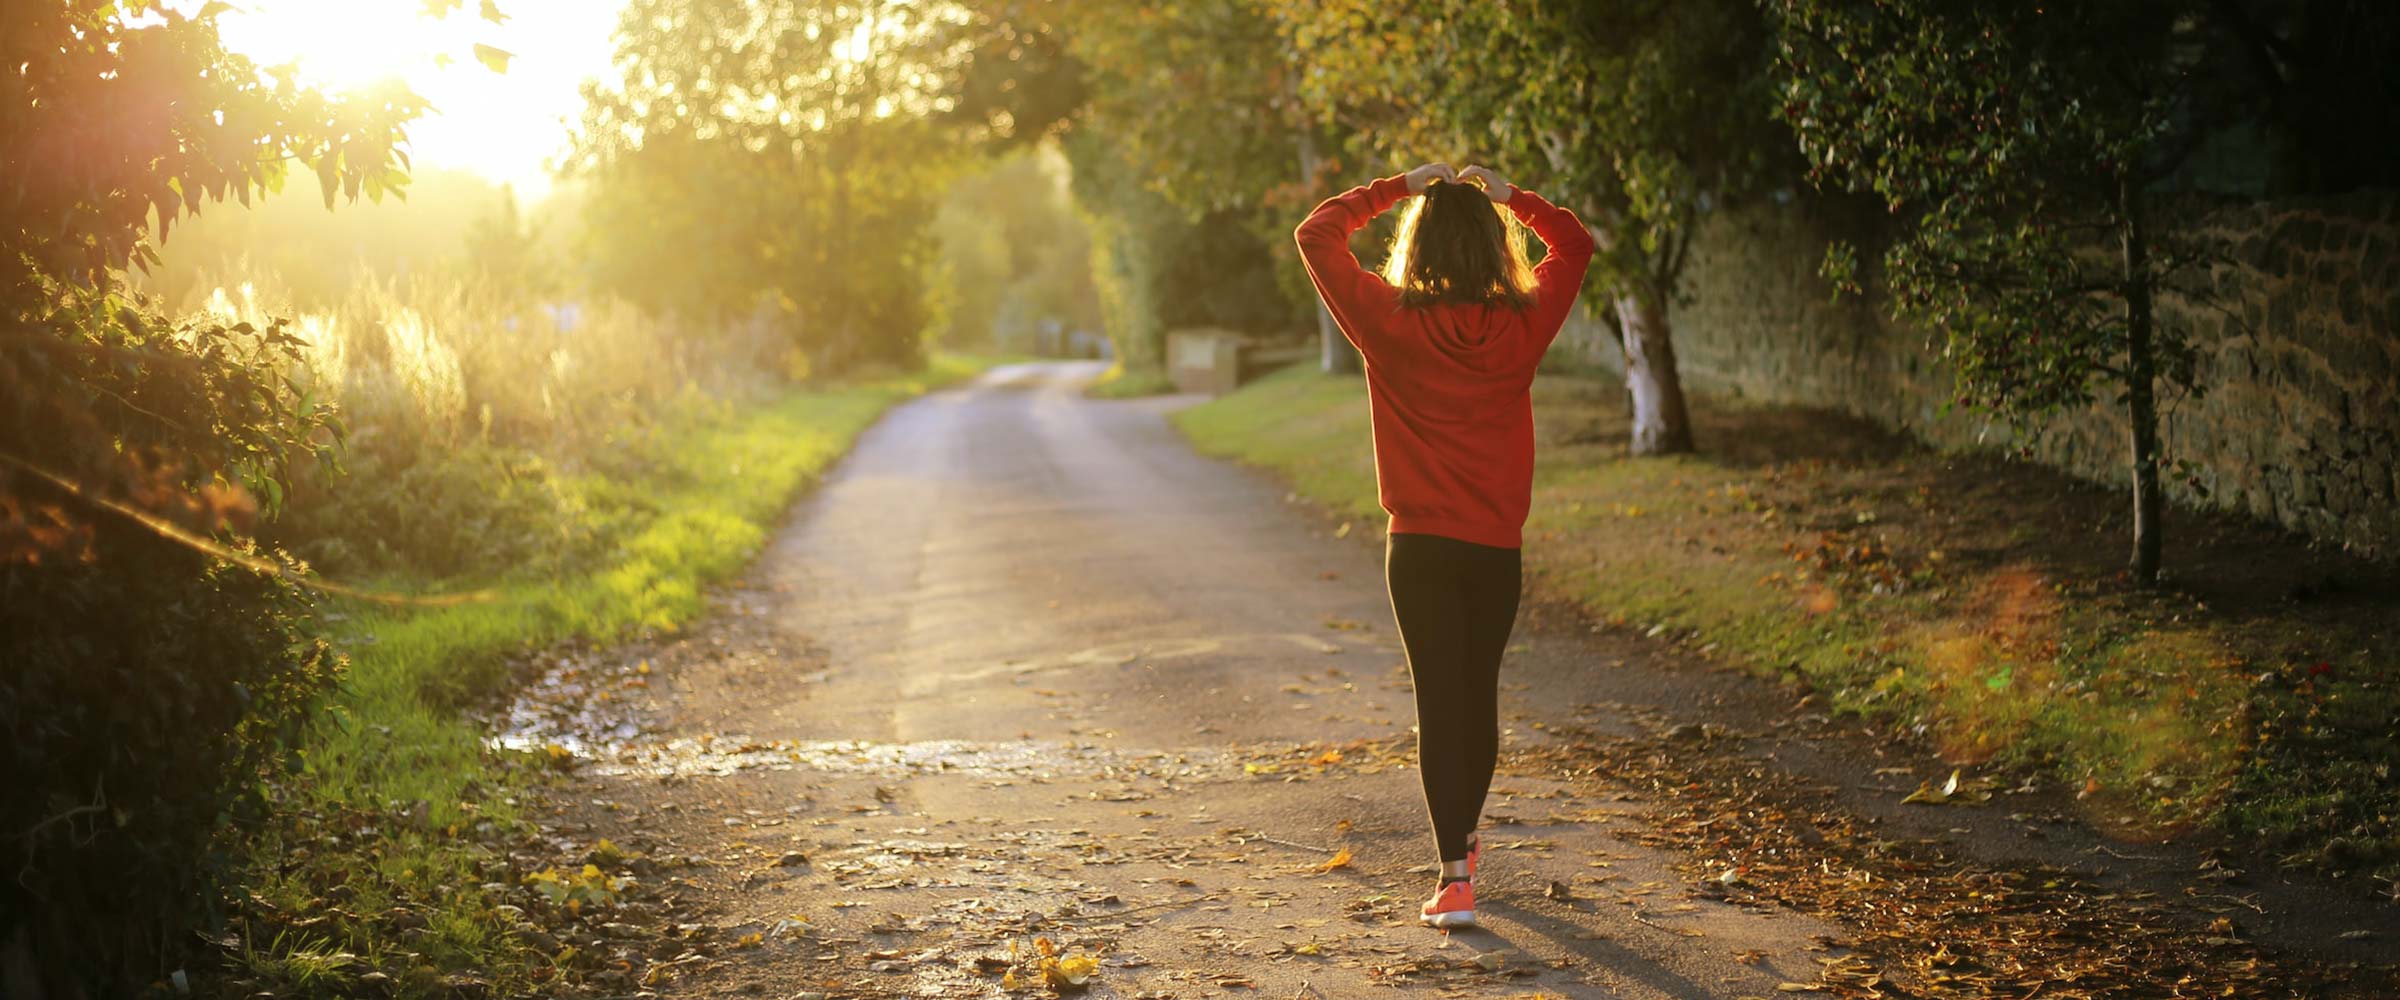 Spazieren gehen - 5 Gründe warum es so gesund ist